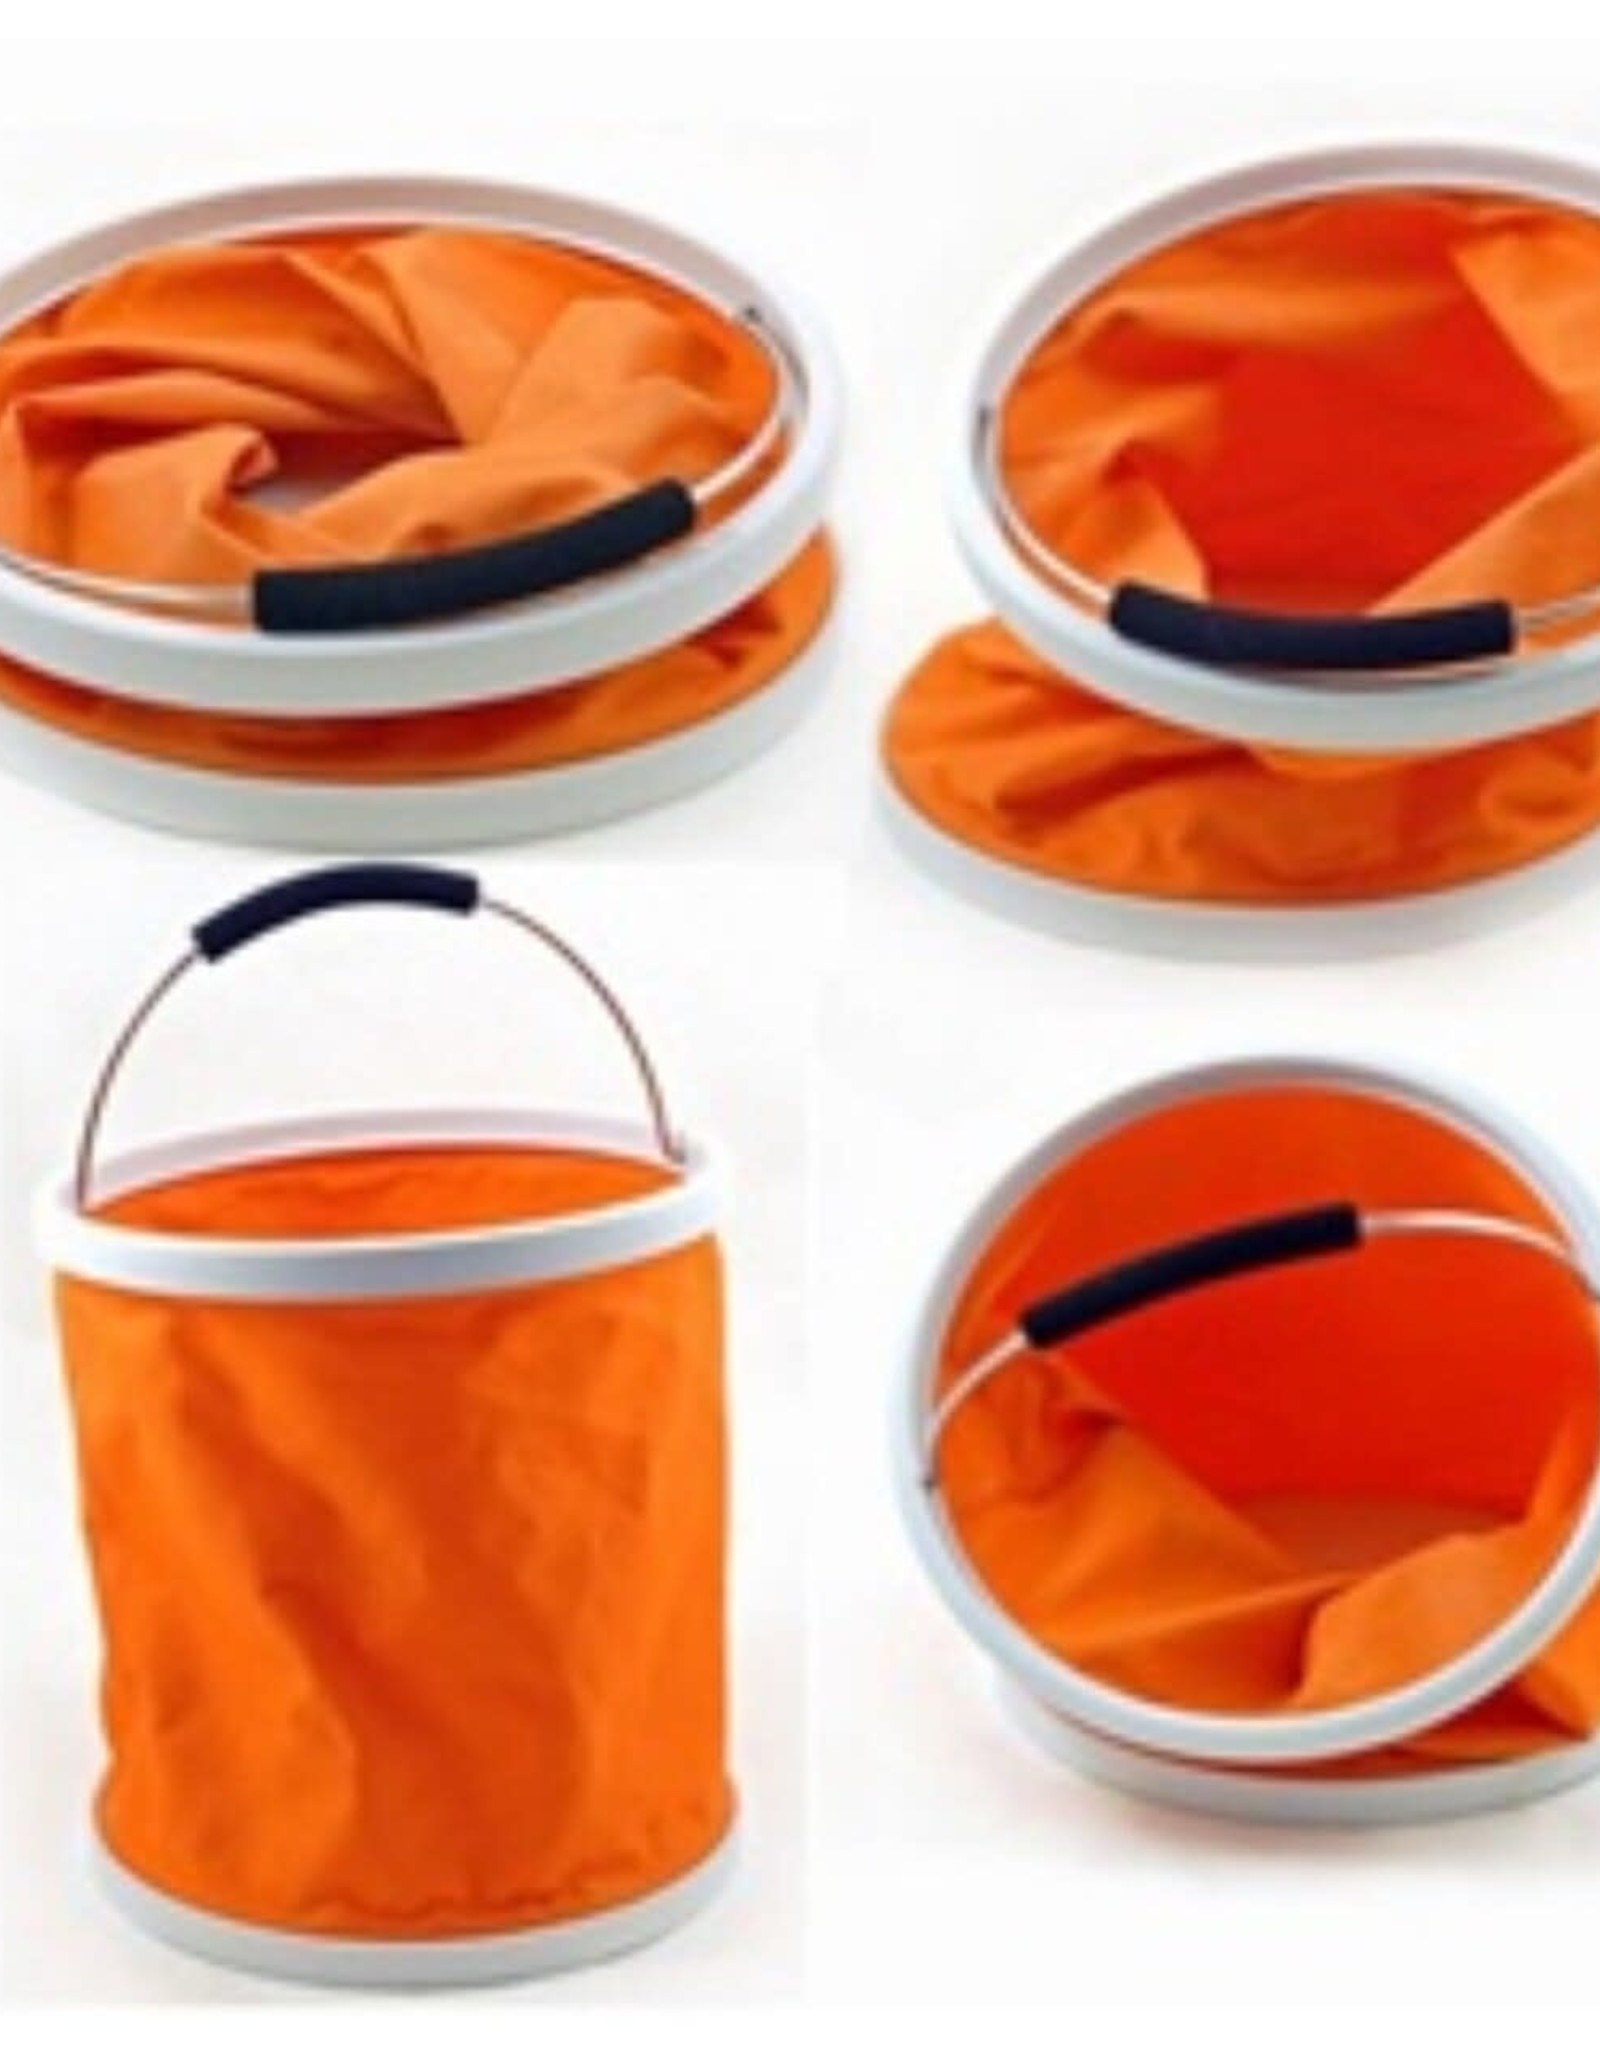 Seasonal Presto Bucket -  Orange